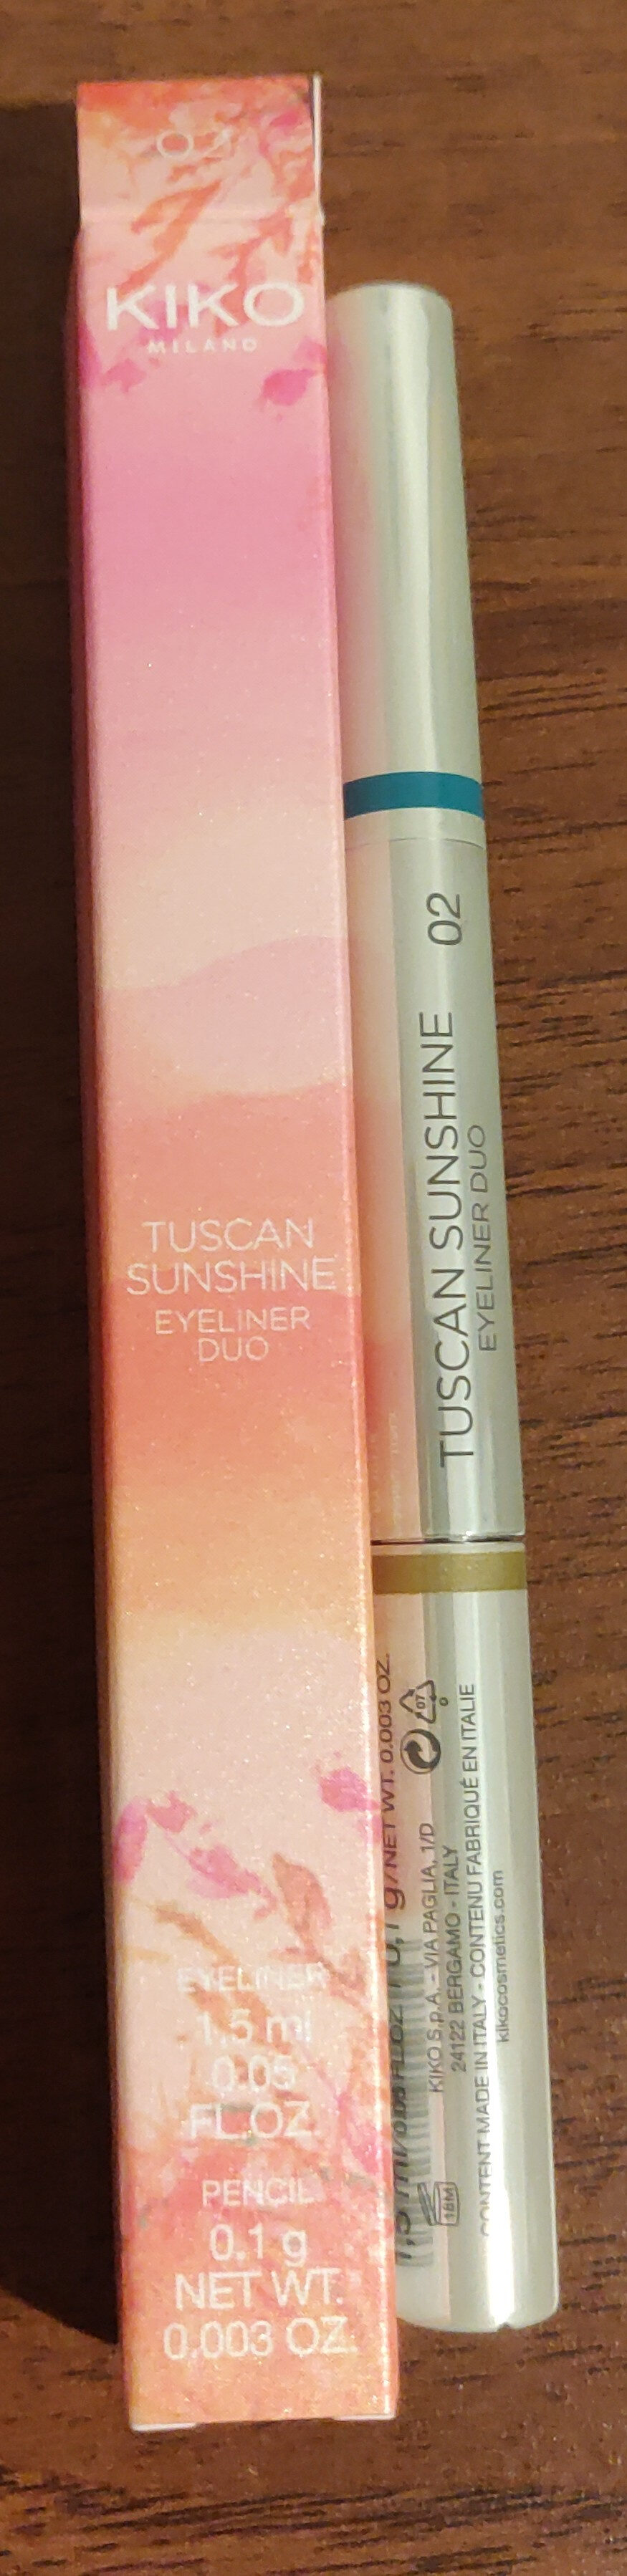 Tuscan sunshine eyeliner duo 02 - Product - it